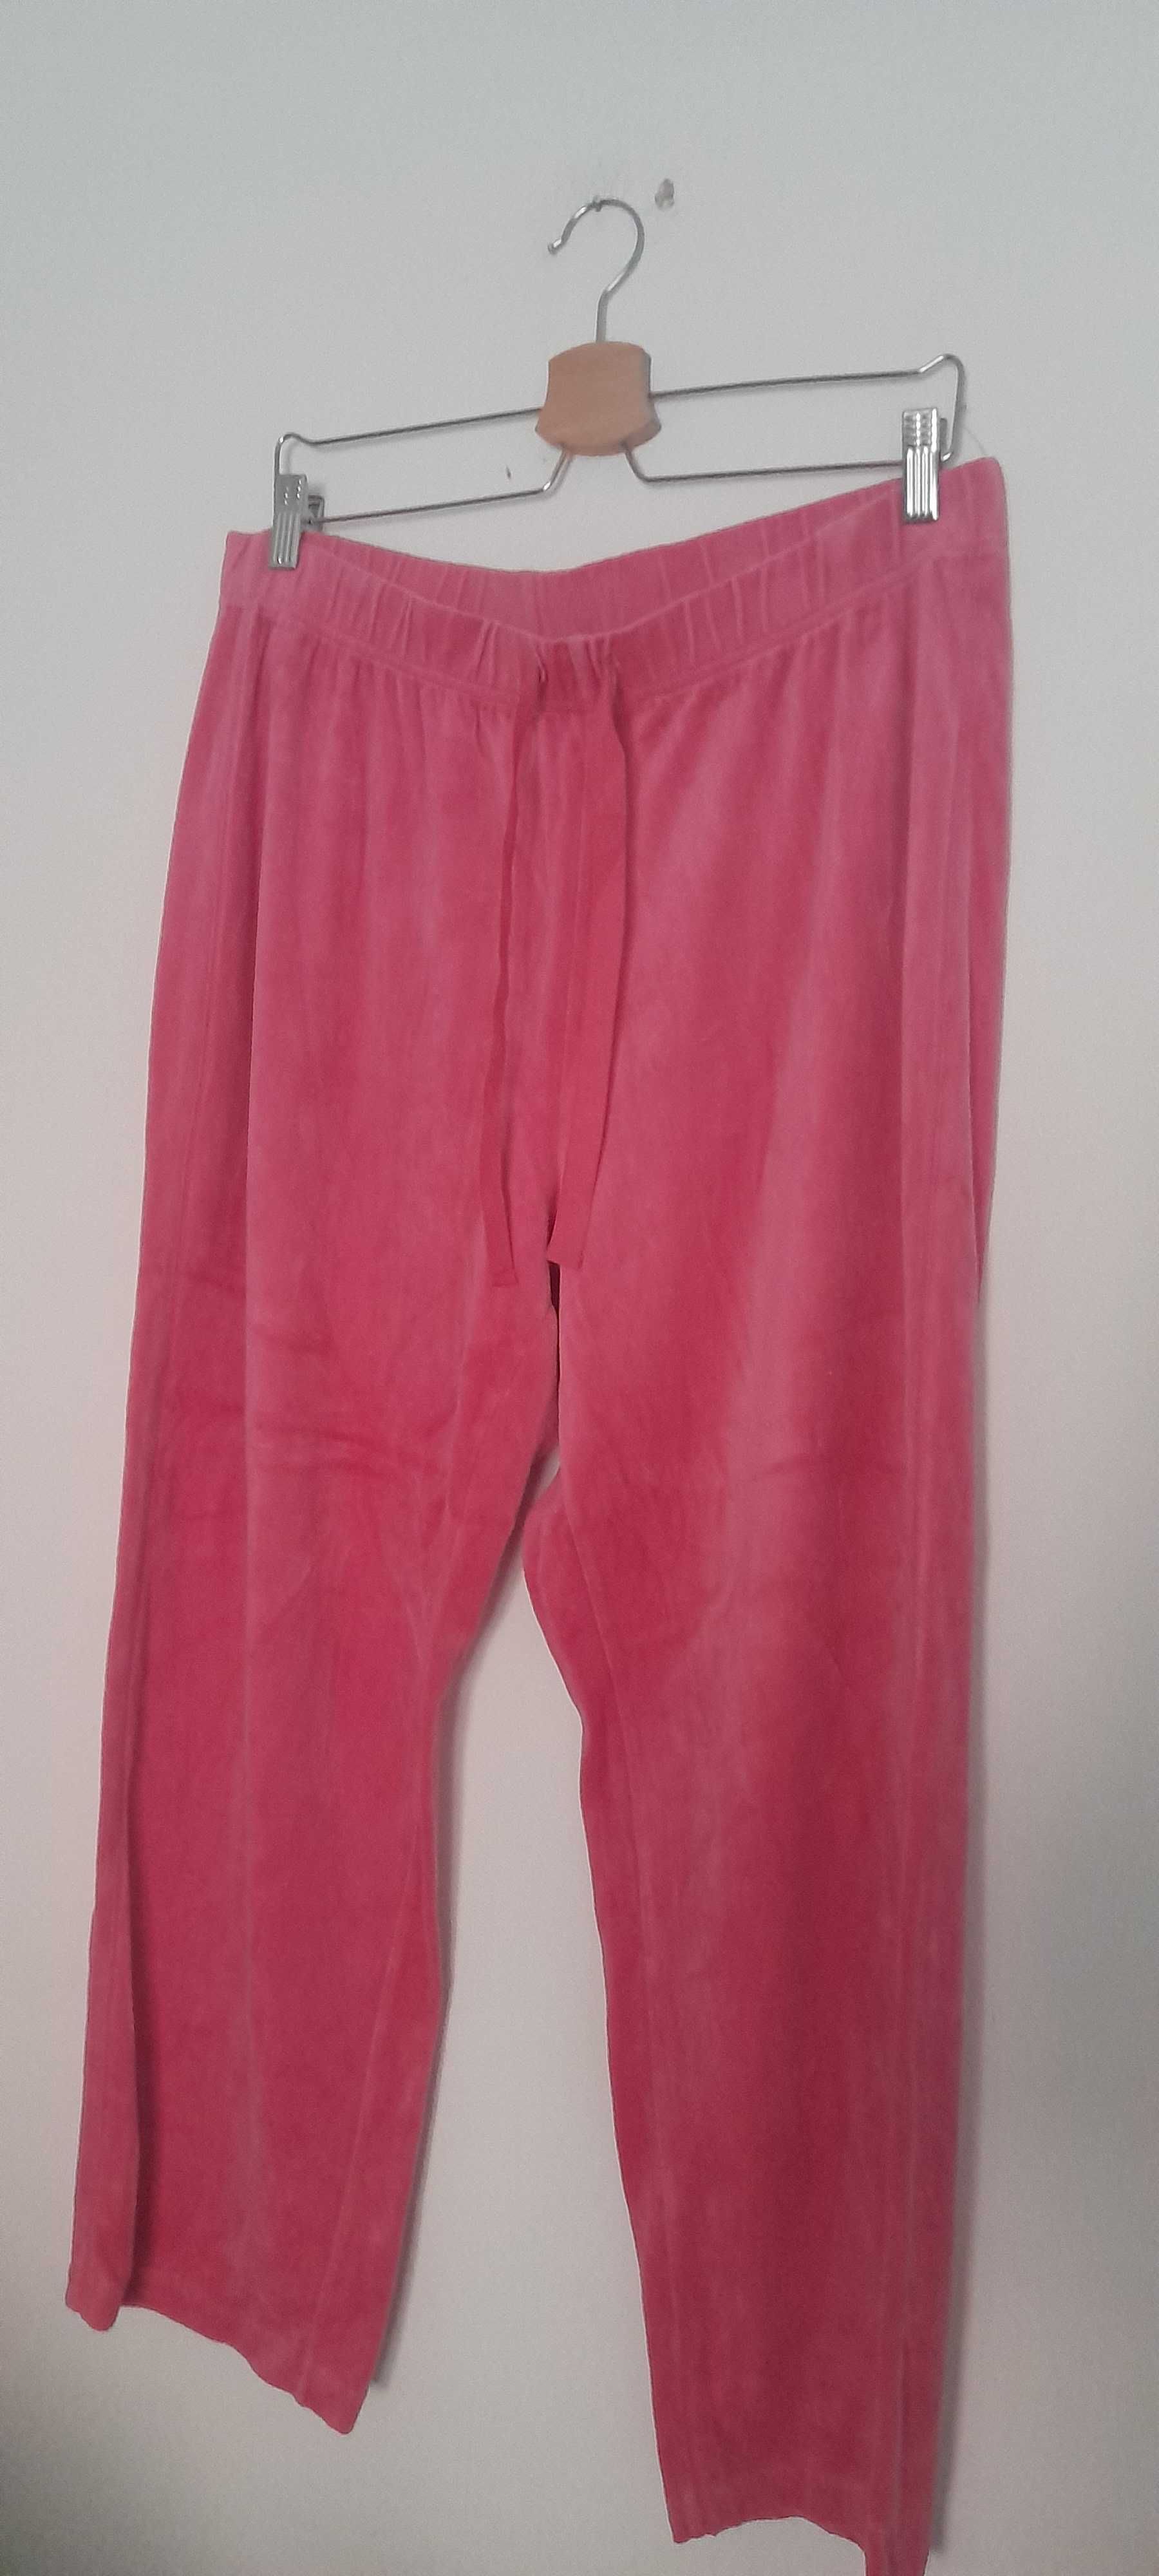 Różowe welurowe spodnie dresowe na gumce 44, 46